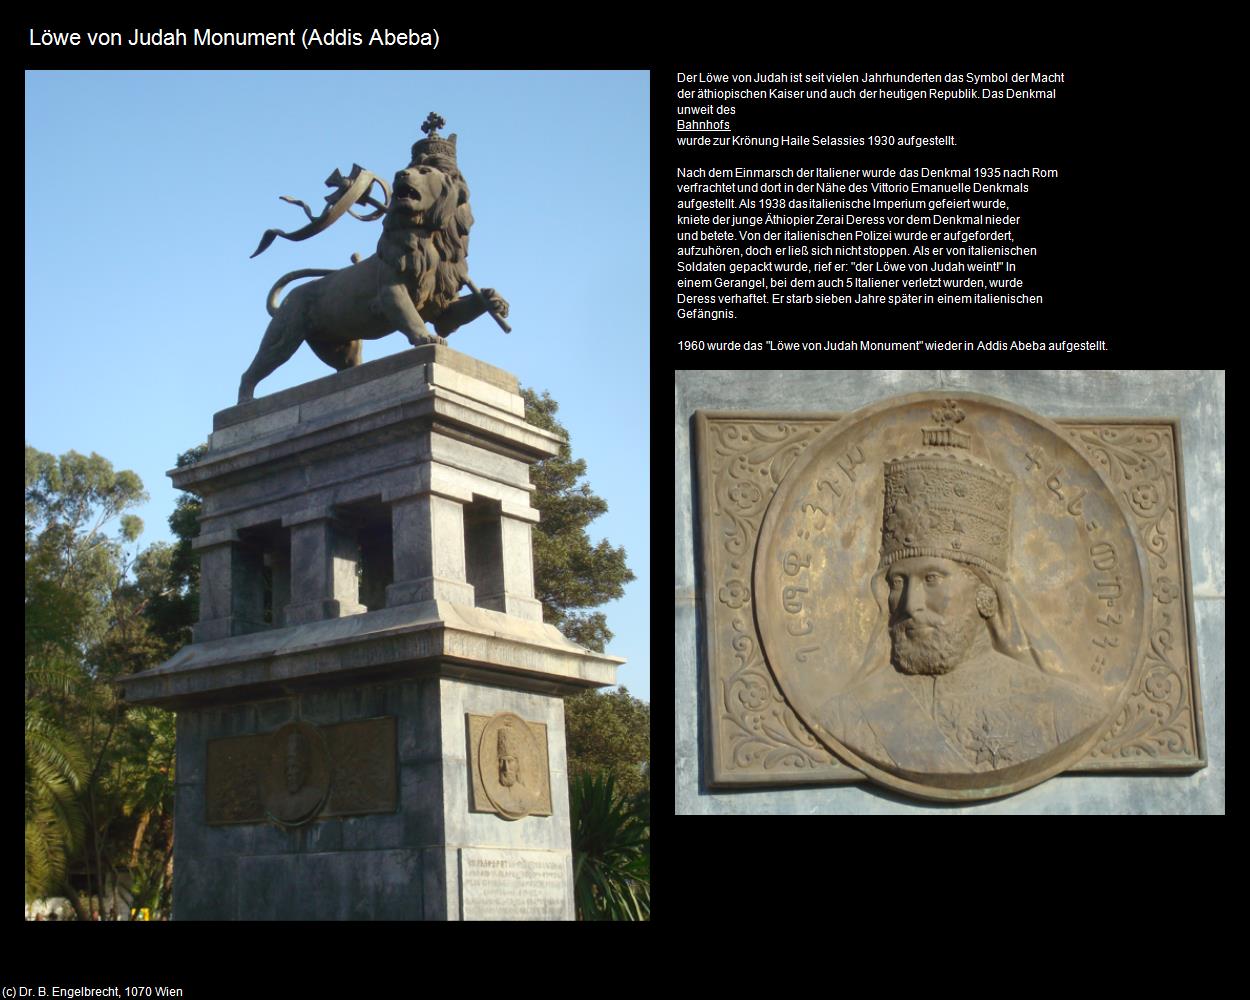 Löwe von Judah Monument (Addis Abeba) in Äthiopien(c)B.Engelbrecht